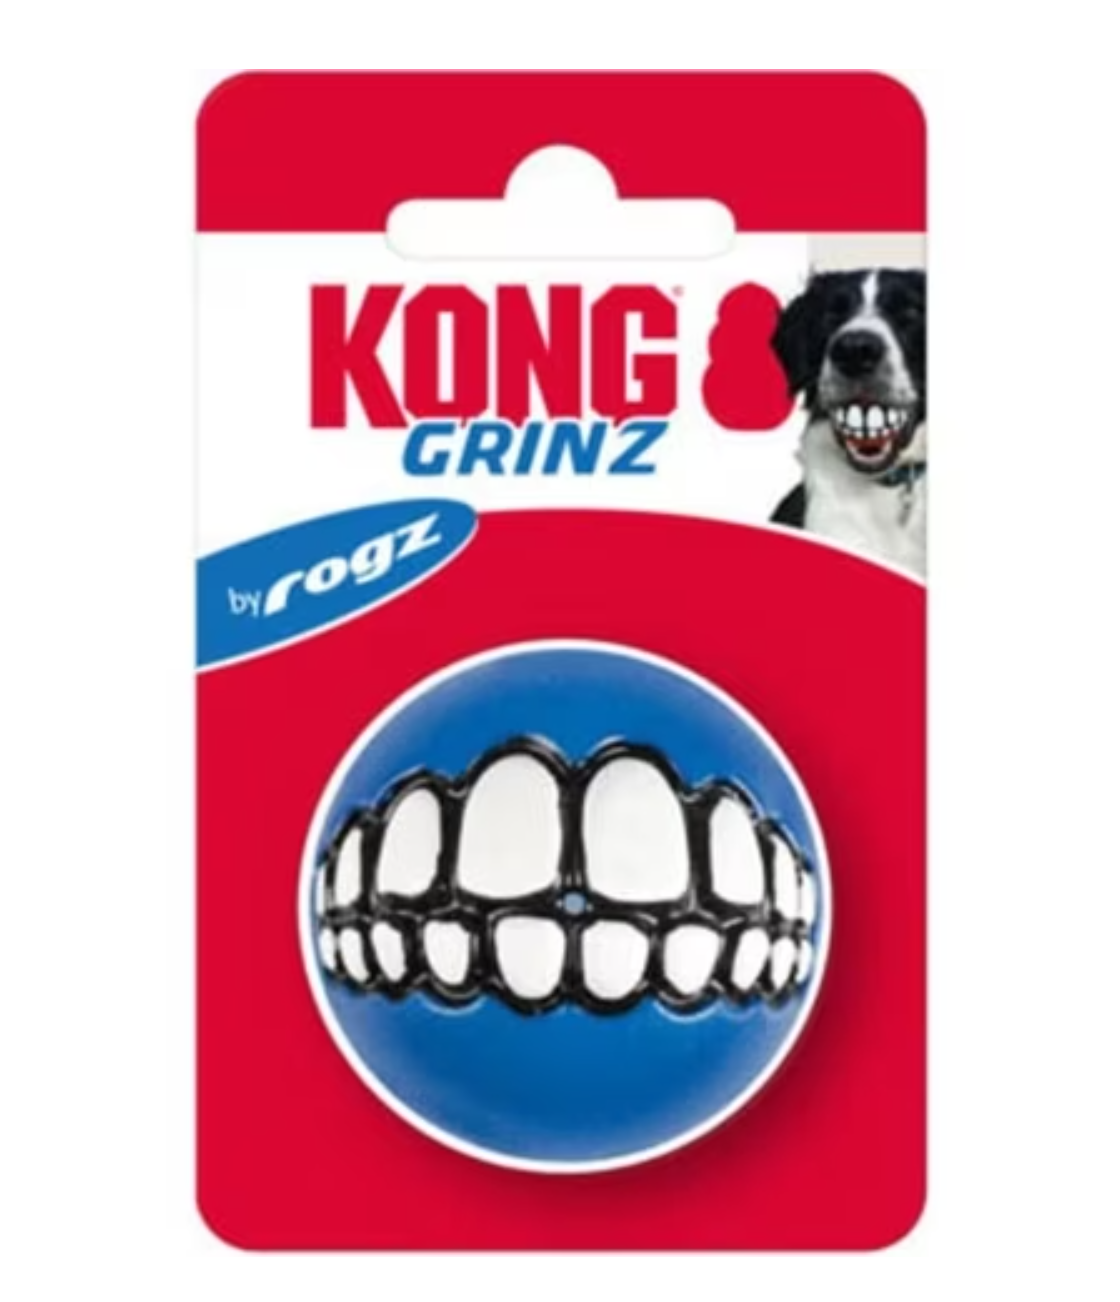 Kong Grinz by Rogz Ball (Assorted)